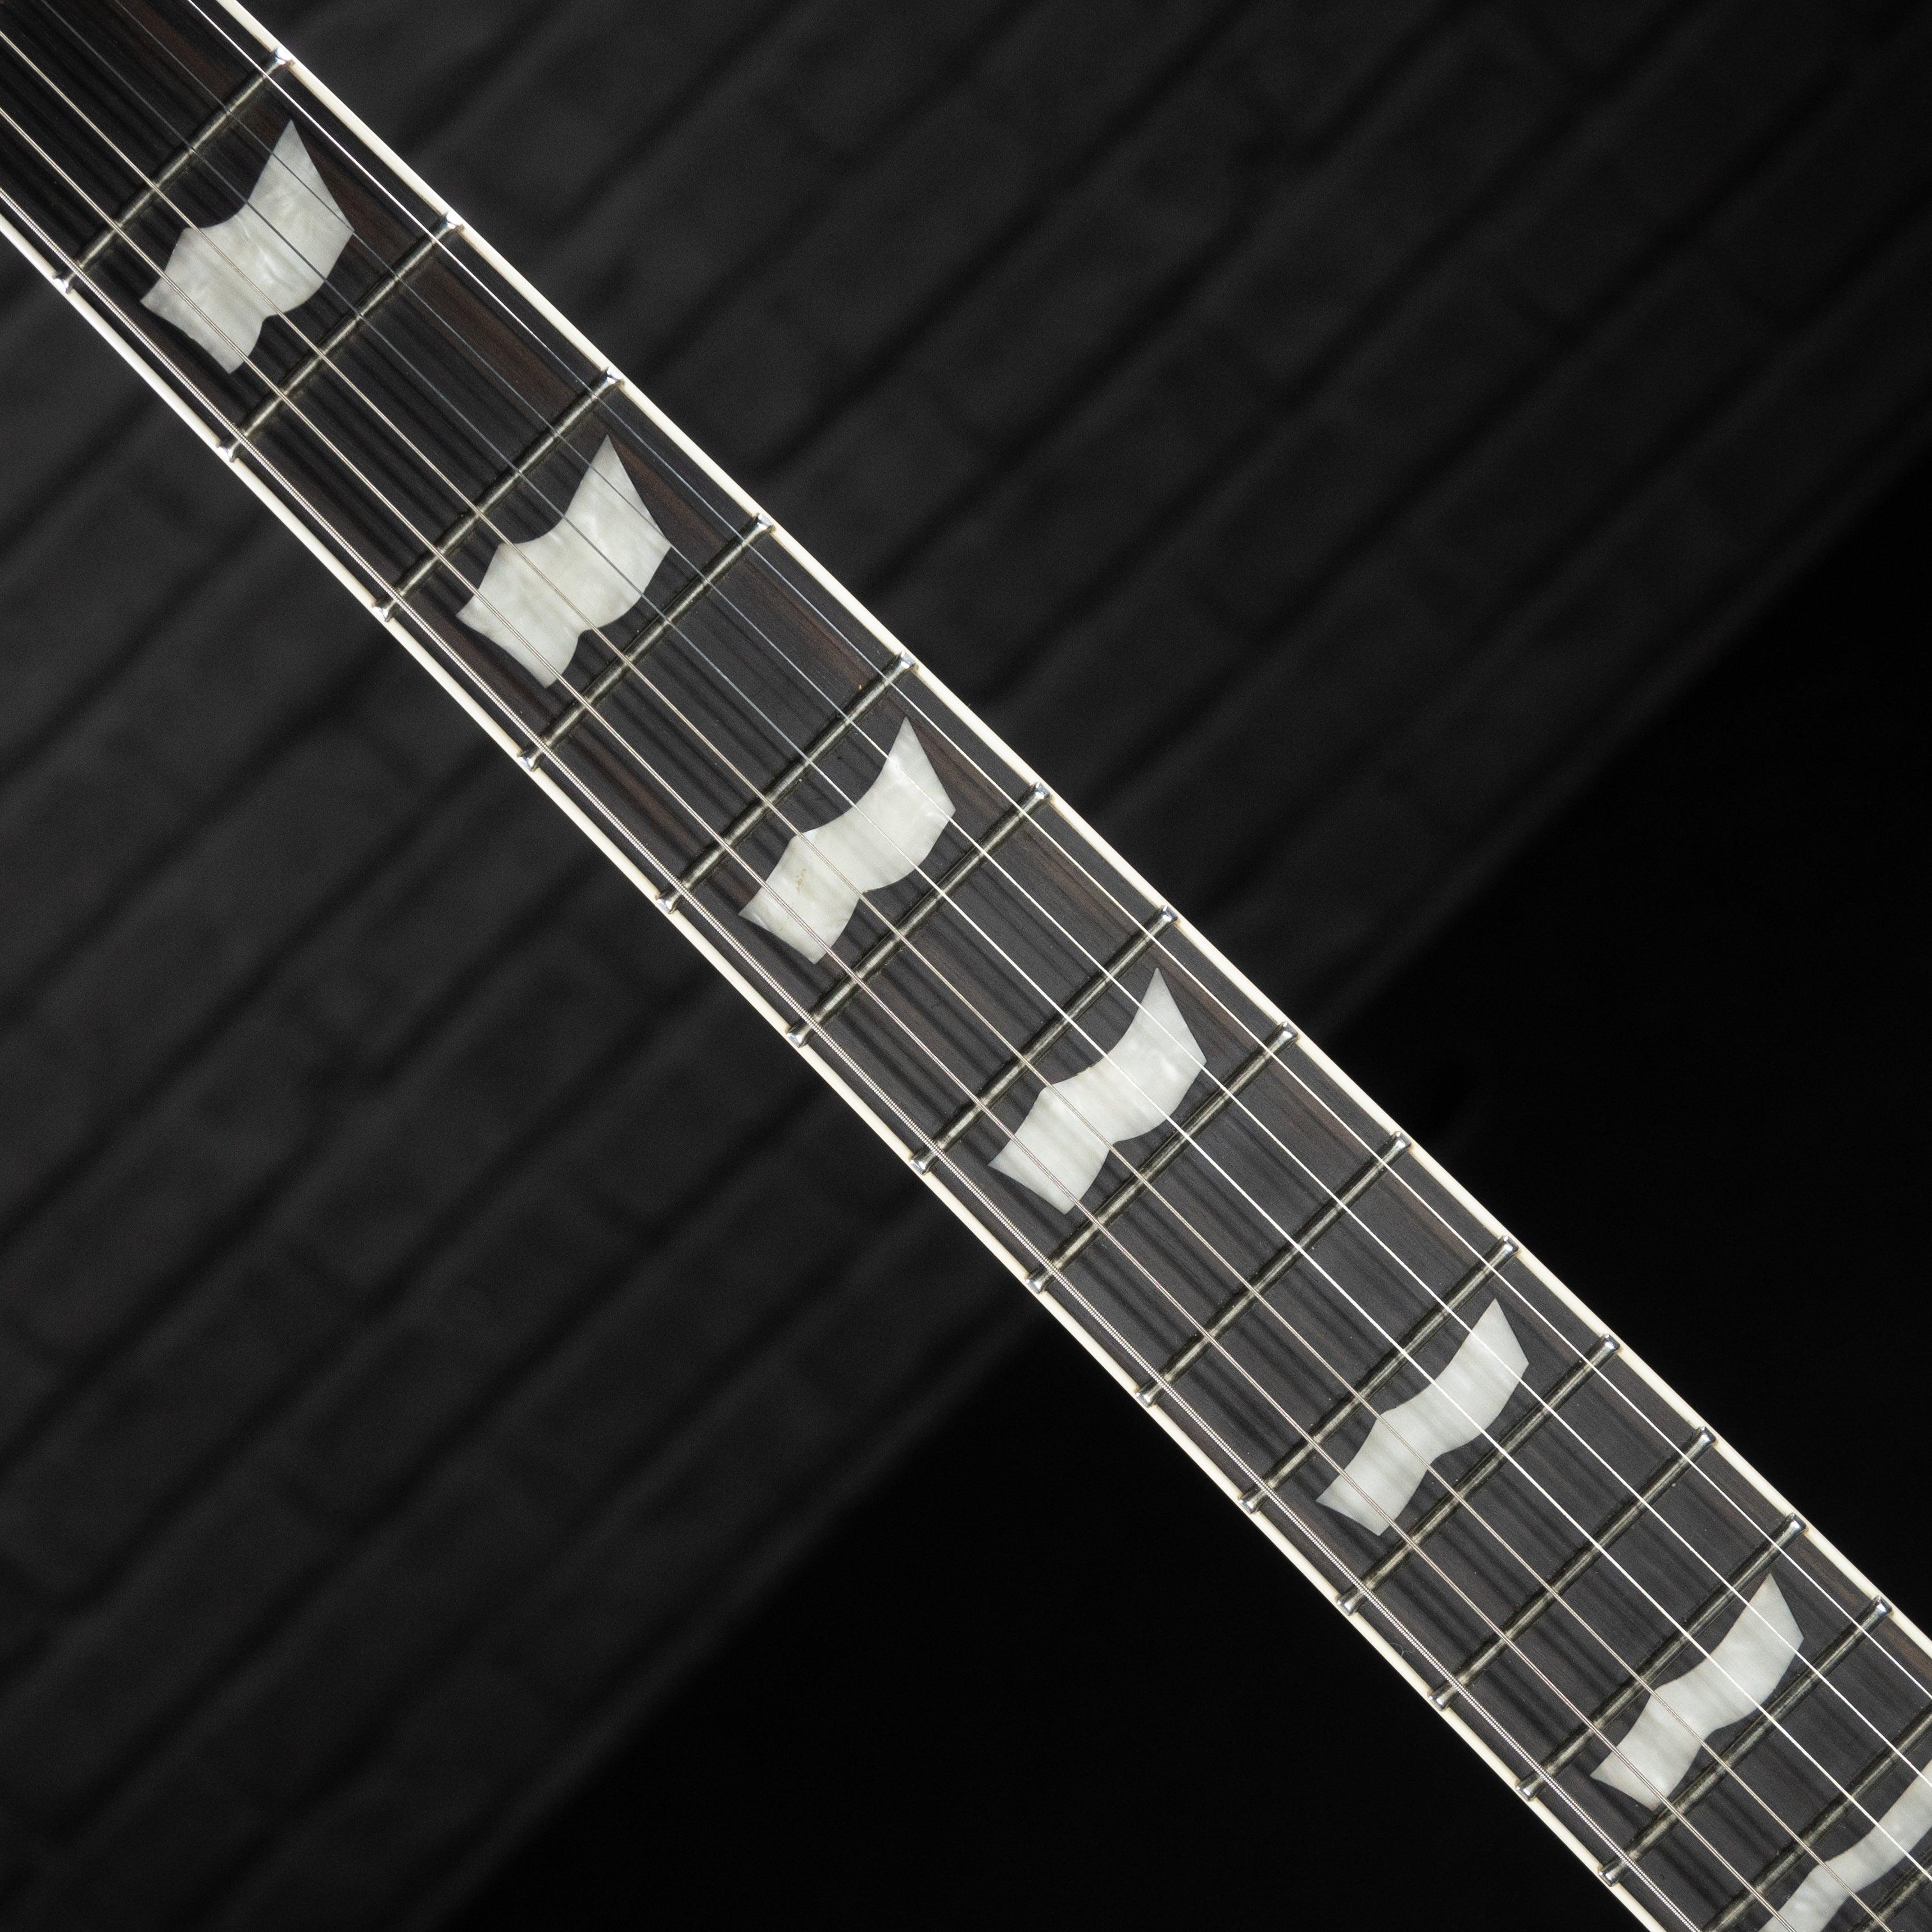 ESP LTD EC-1000ET Evertune Electric Guitar (See Thru Black) USED - Impulse Music Co.